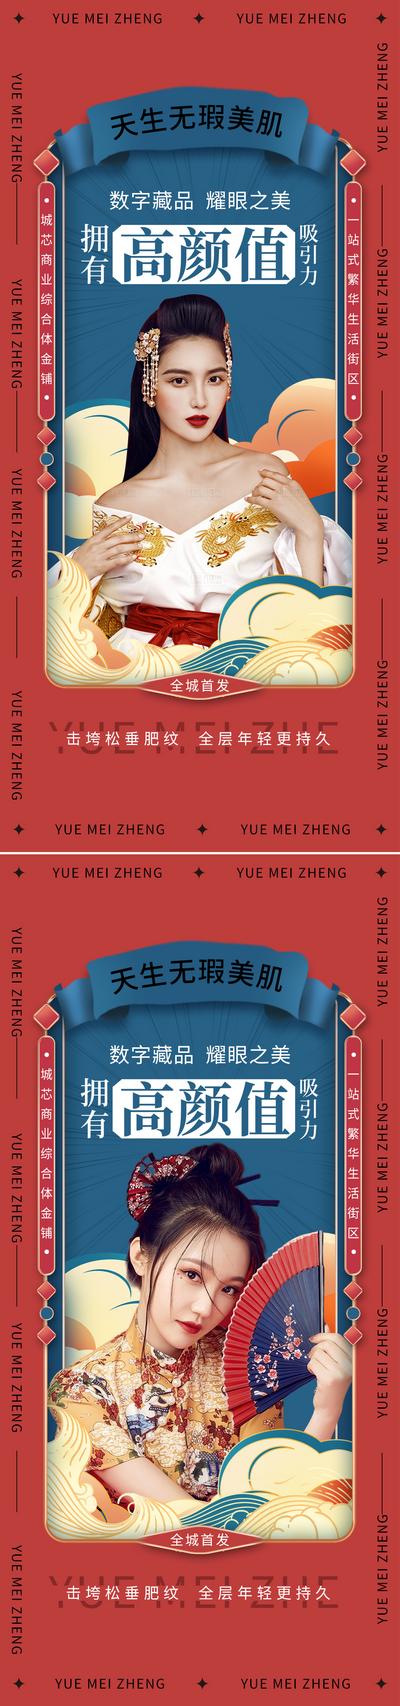 南门网 广告 海报 医美 人物 活动 促销 周年庆 美容 卡项 优惠 简约